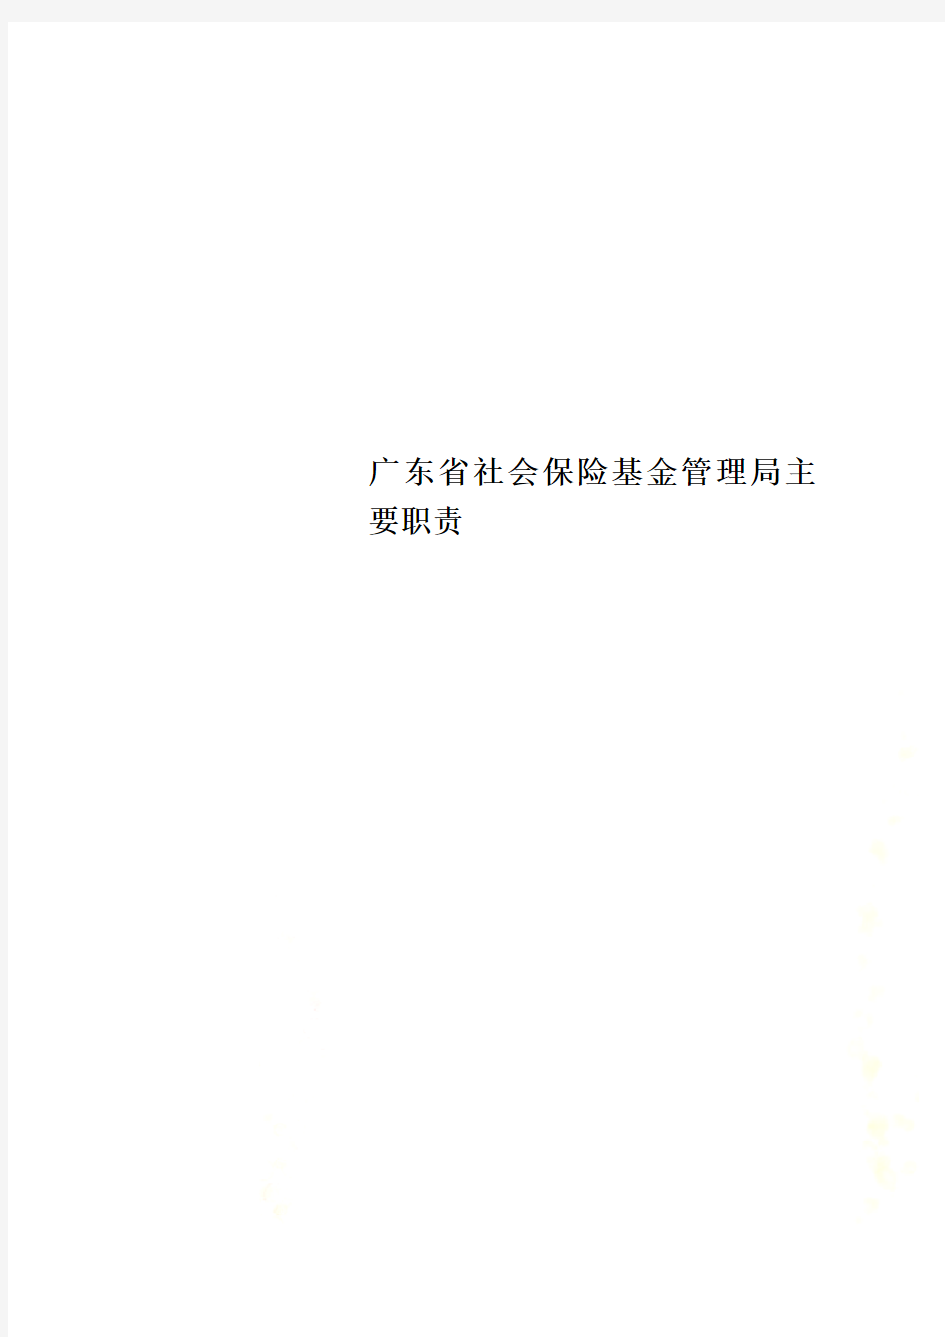 广东省社会保险基金管理局主要职责